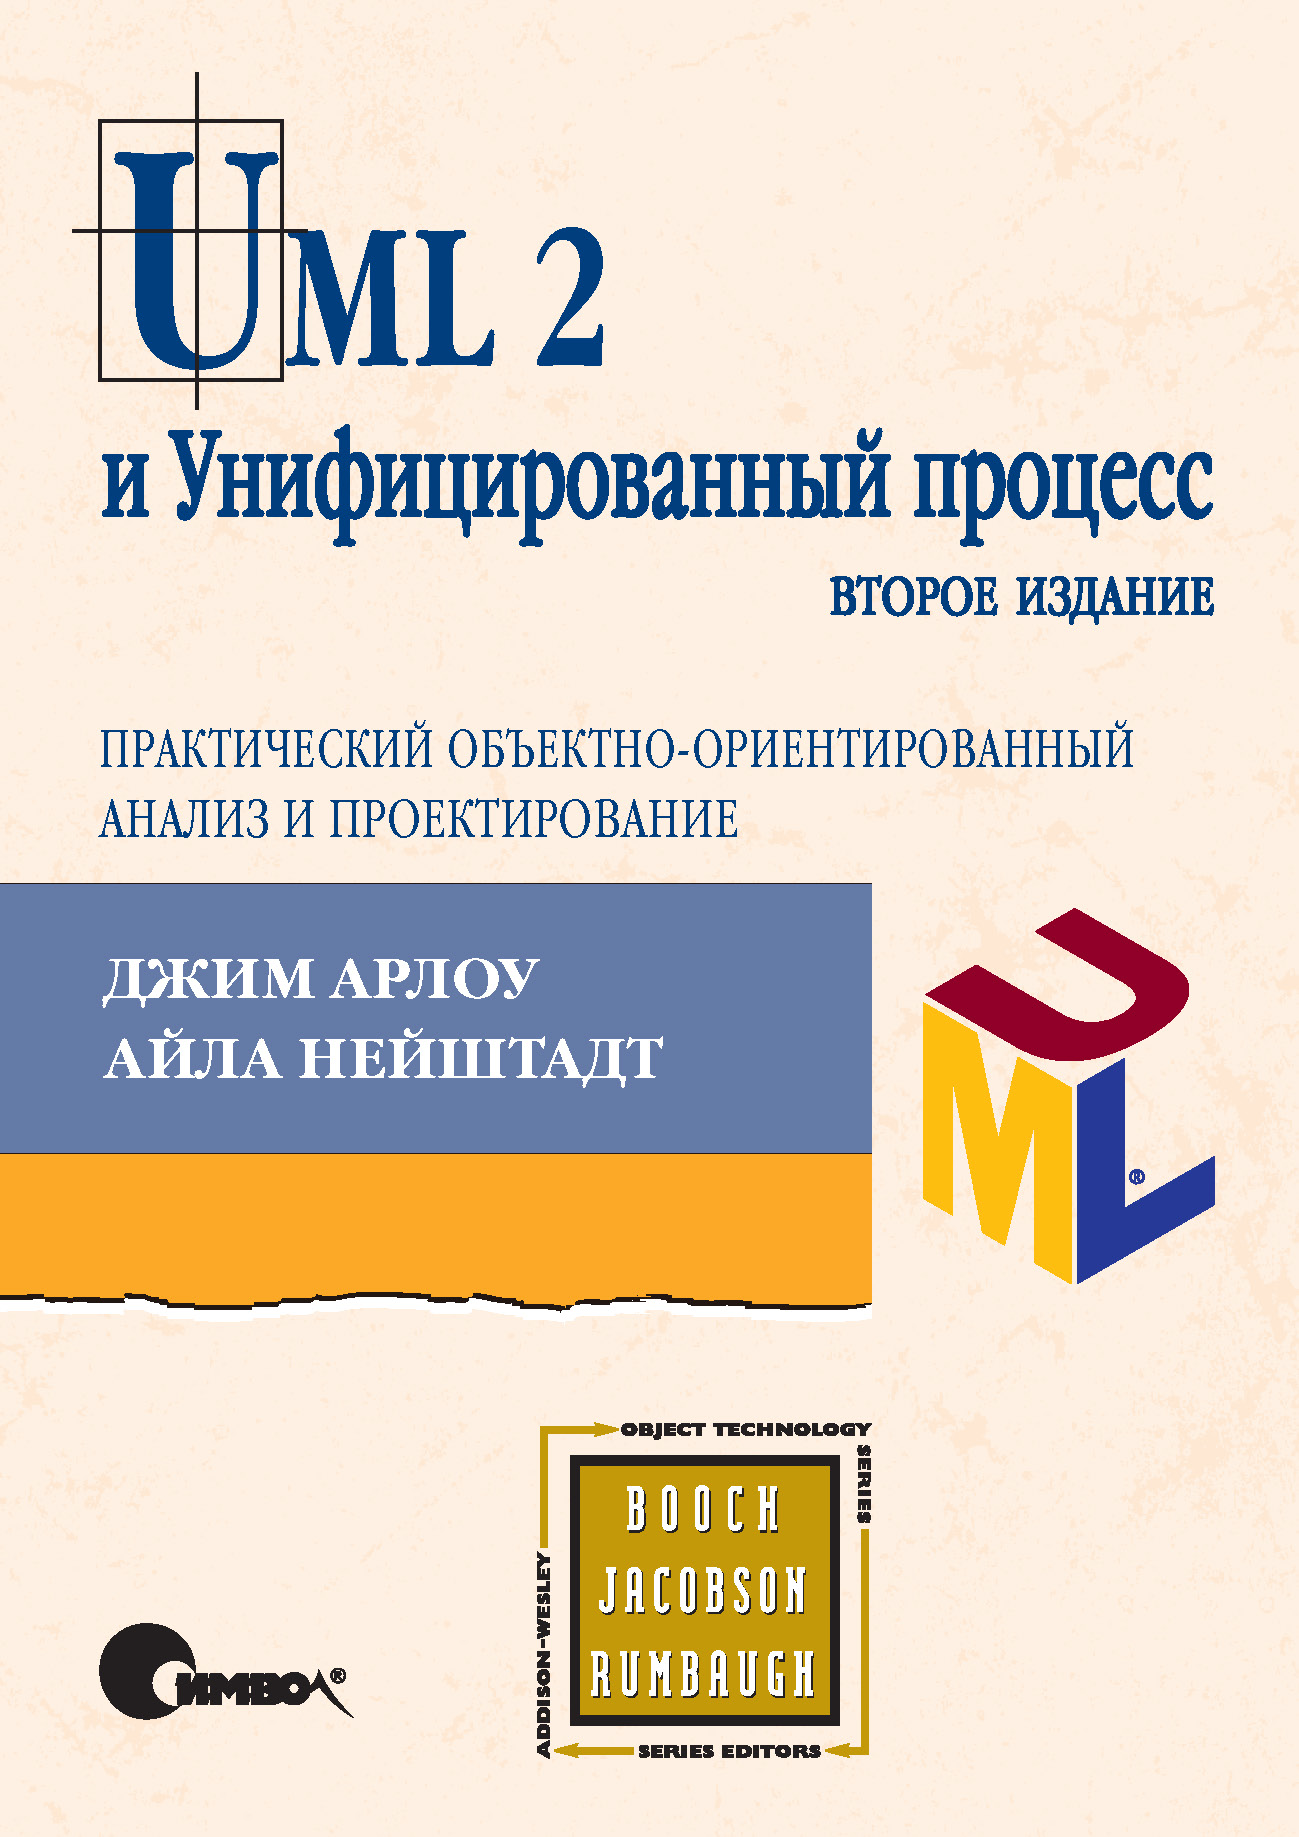 UML 2и Унифицированный процесс, практический объектно-ориентированный анализ и проектирование. 2-е издание